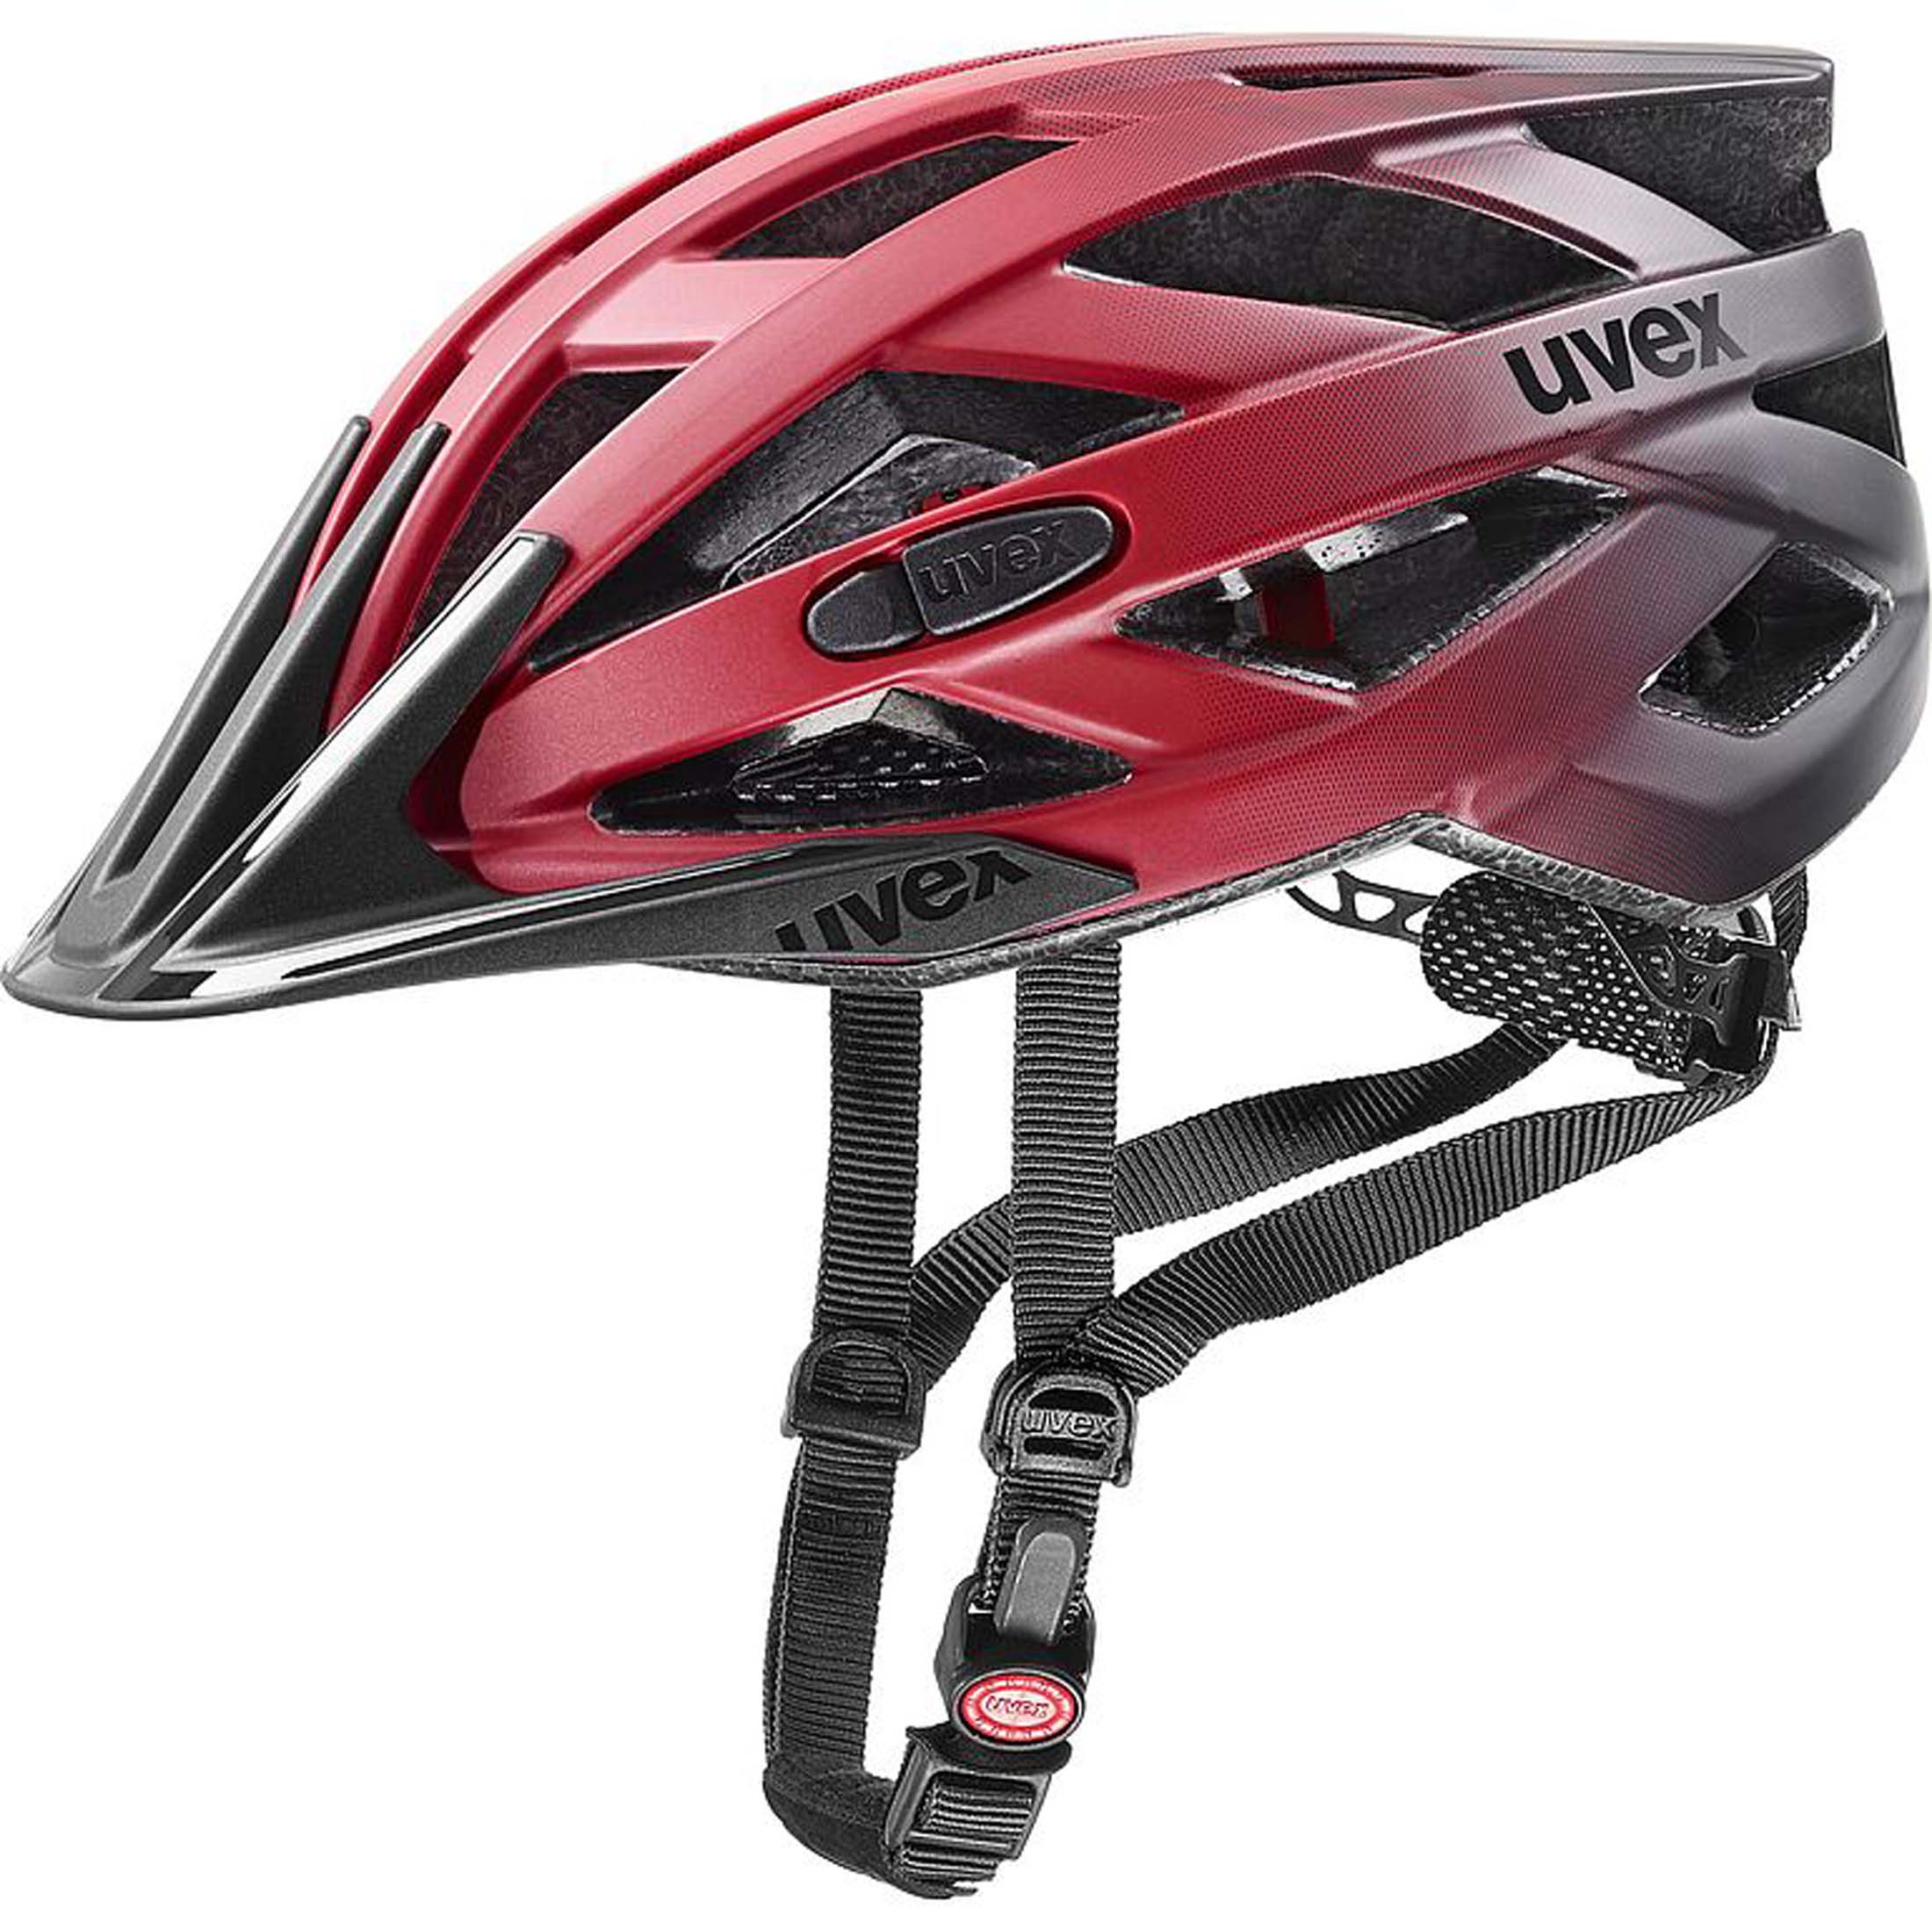 Uvex i-vo cc bicycle helmet